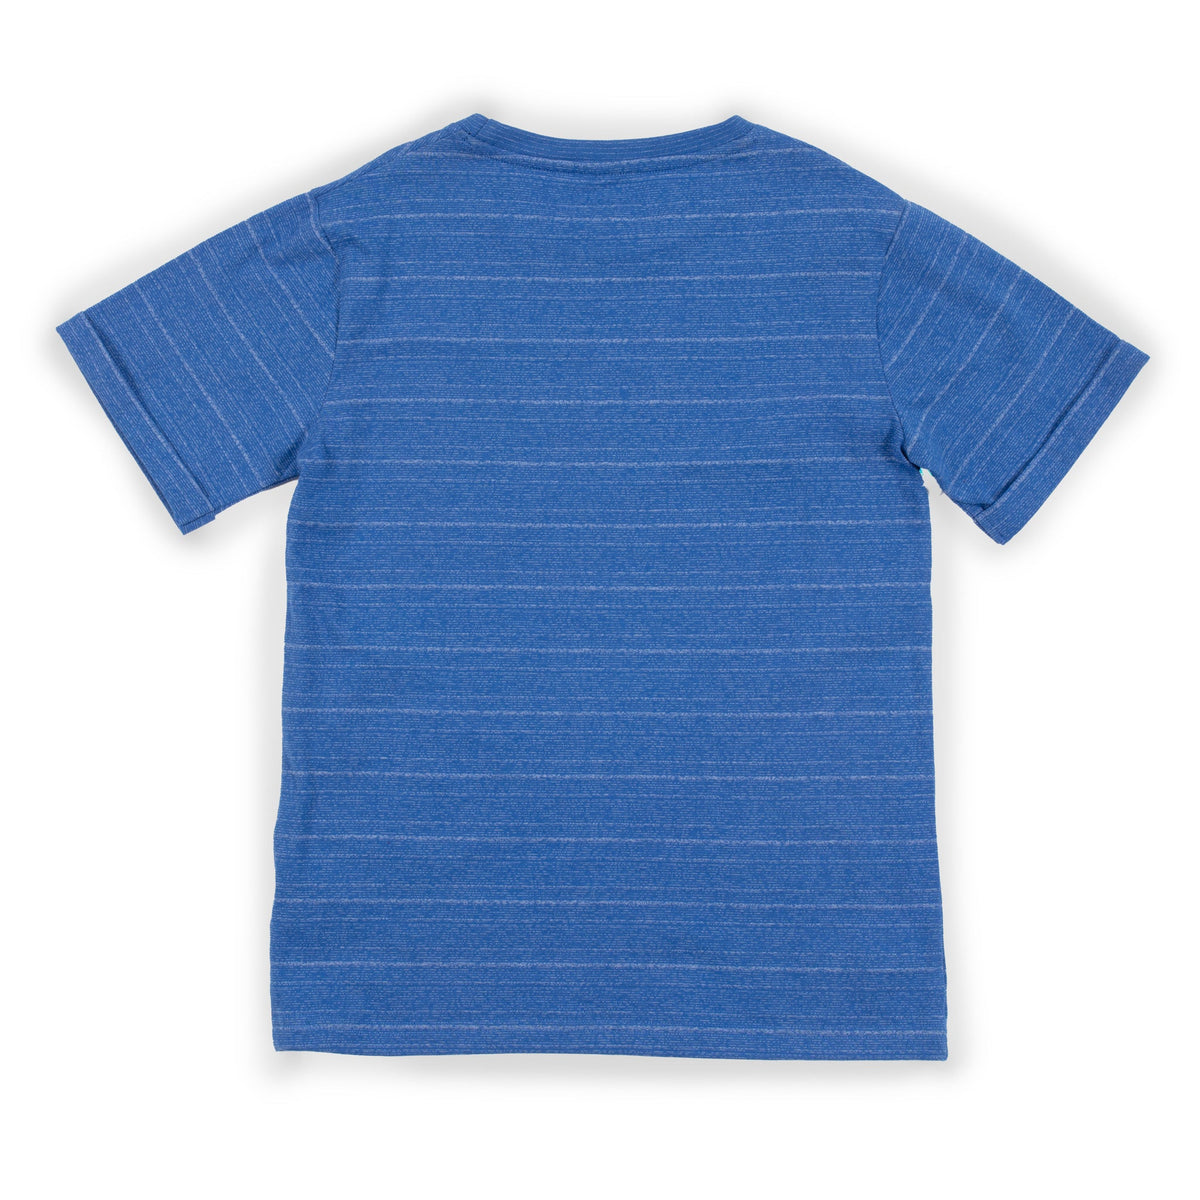 T-Shirt pour enfant garçon par Nano | S2301-11 Bleu chiné | Boutique Flos, vêtements mode pour bébés et enfants